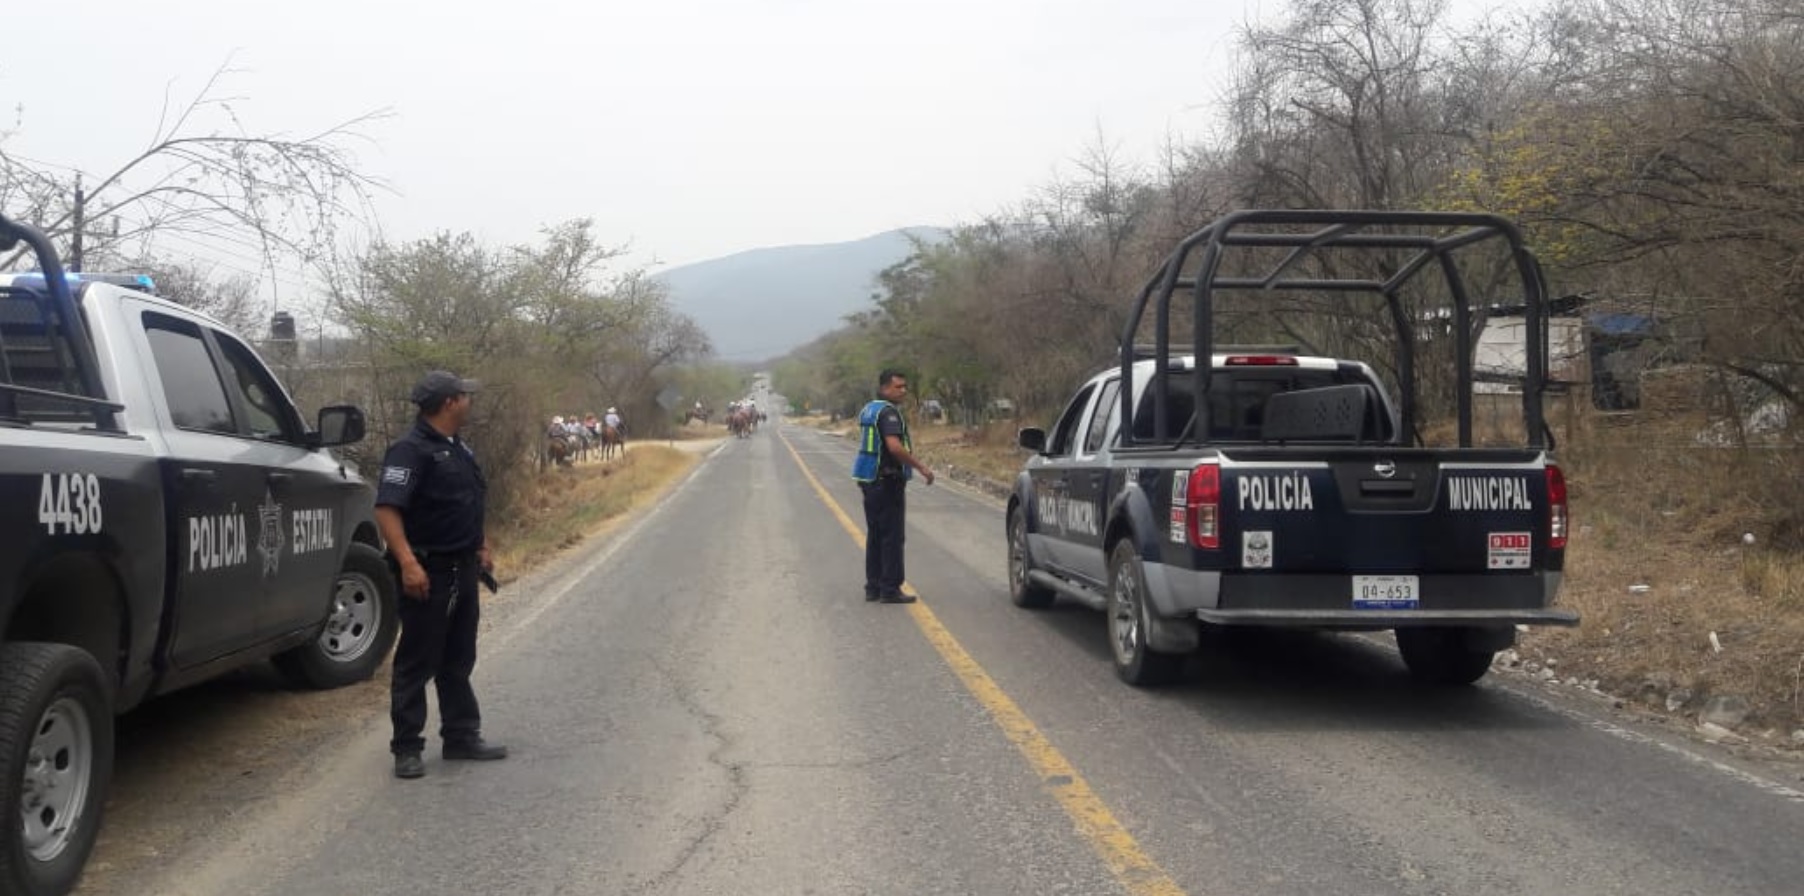 Los elementos habrían descendido de la unidad y dejaron sus armas dentro del vehículo, de donde los ladrones las sacaron Twitter: (Policía estatal Querétaro)